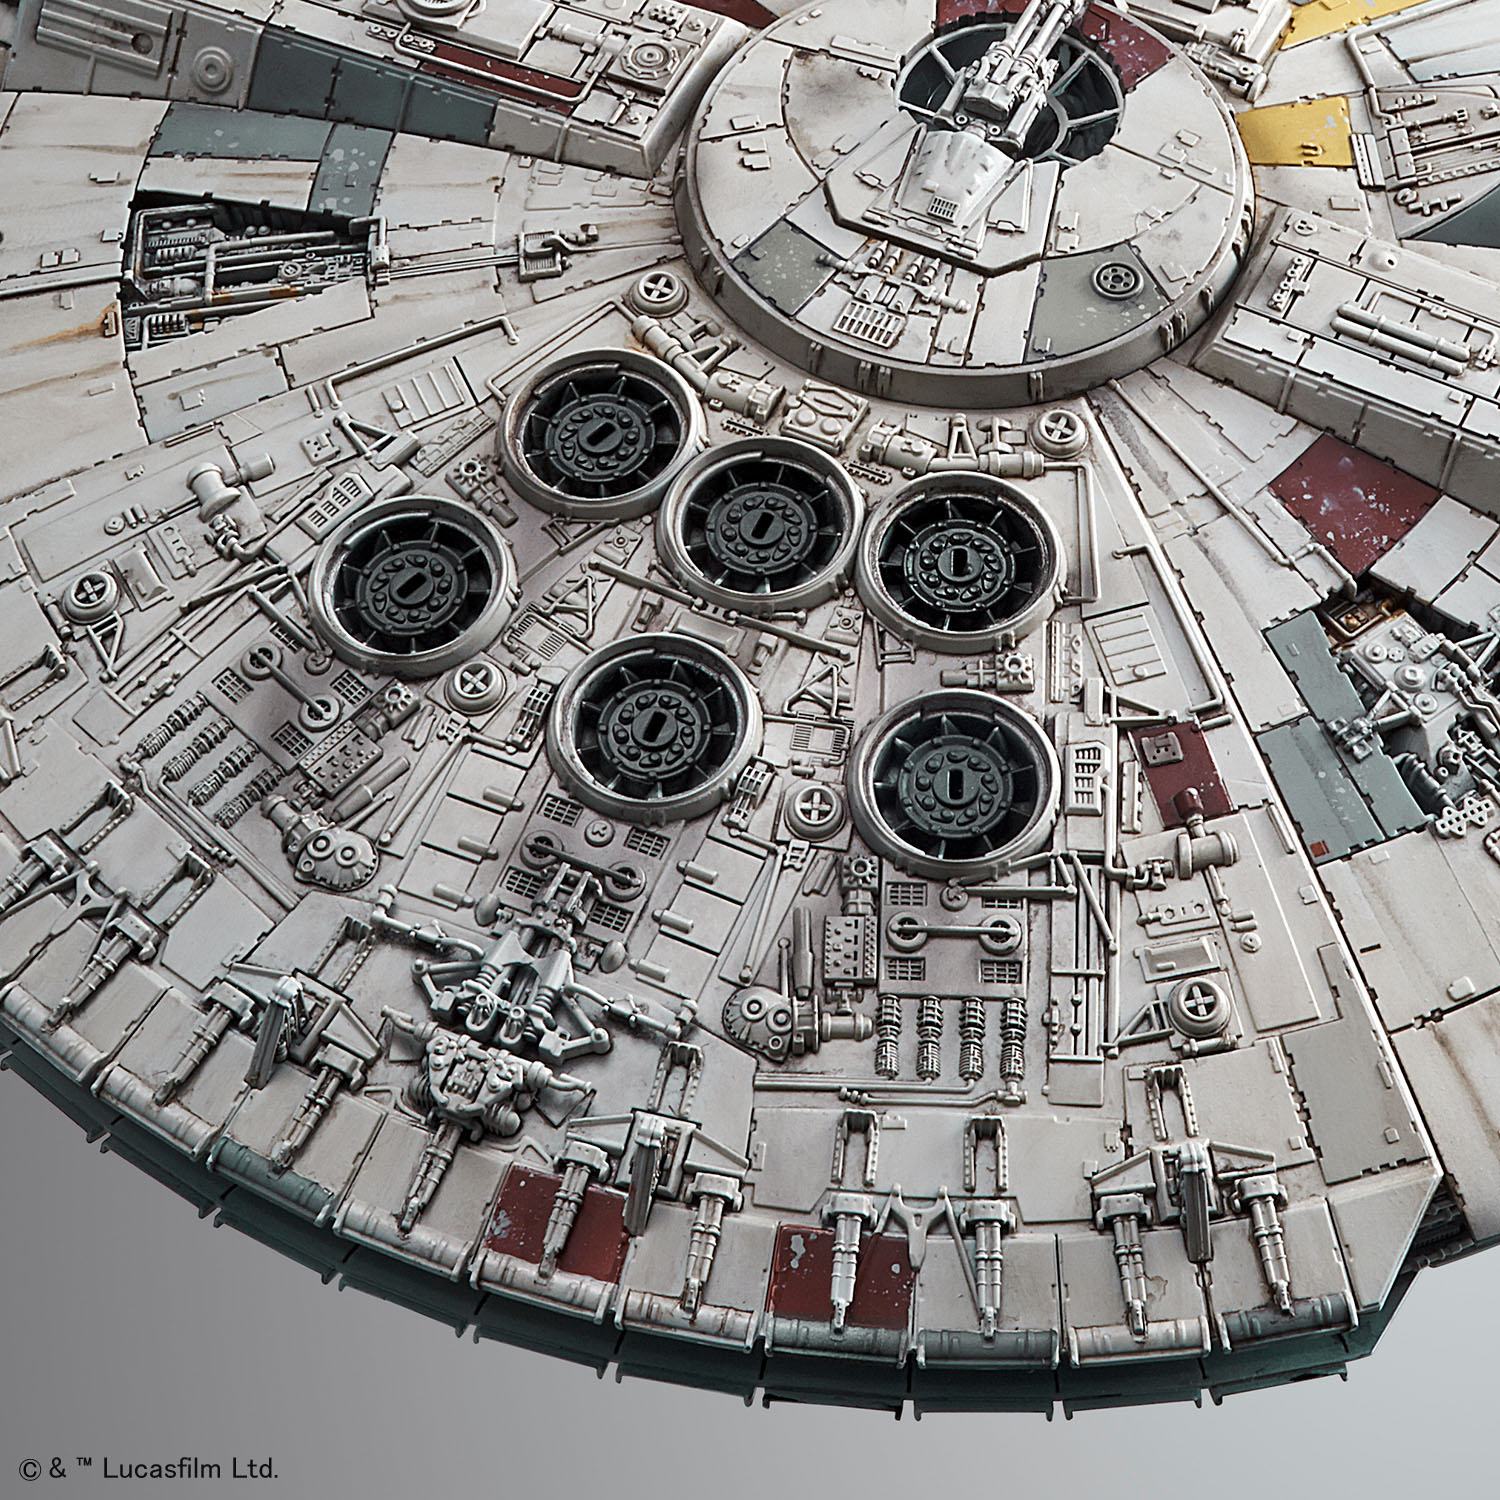 Star Wars maquette 1/144 Millennium Falcon